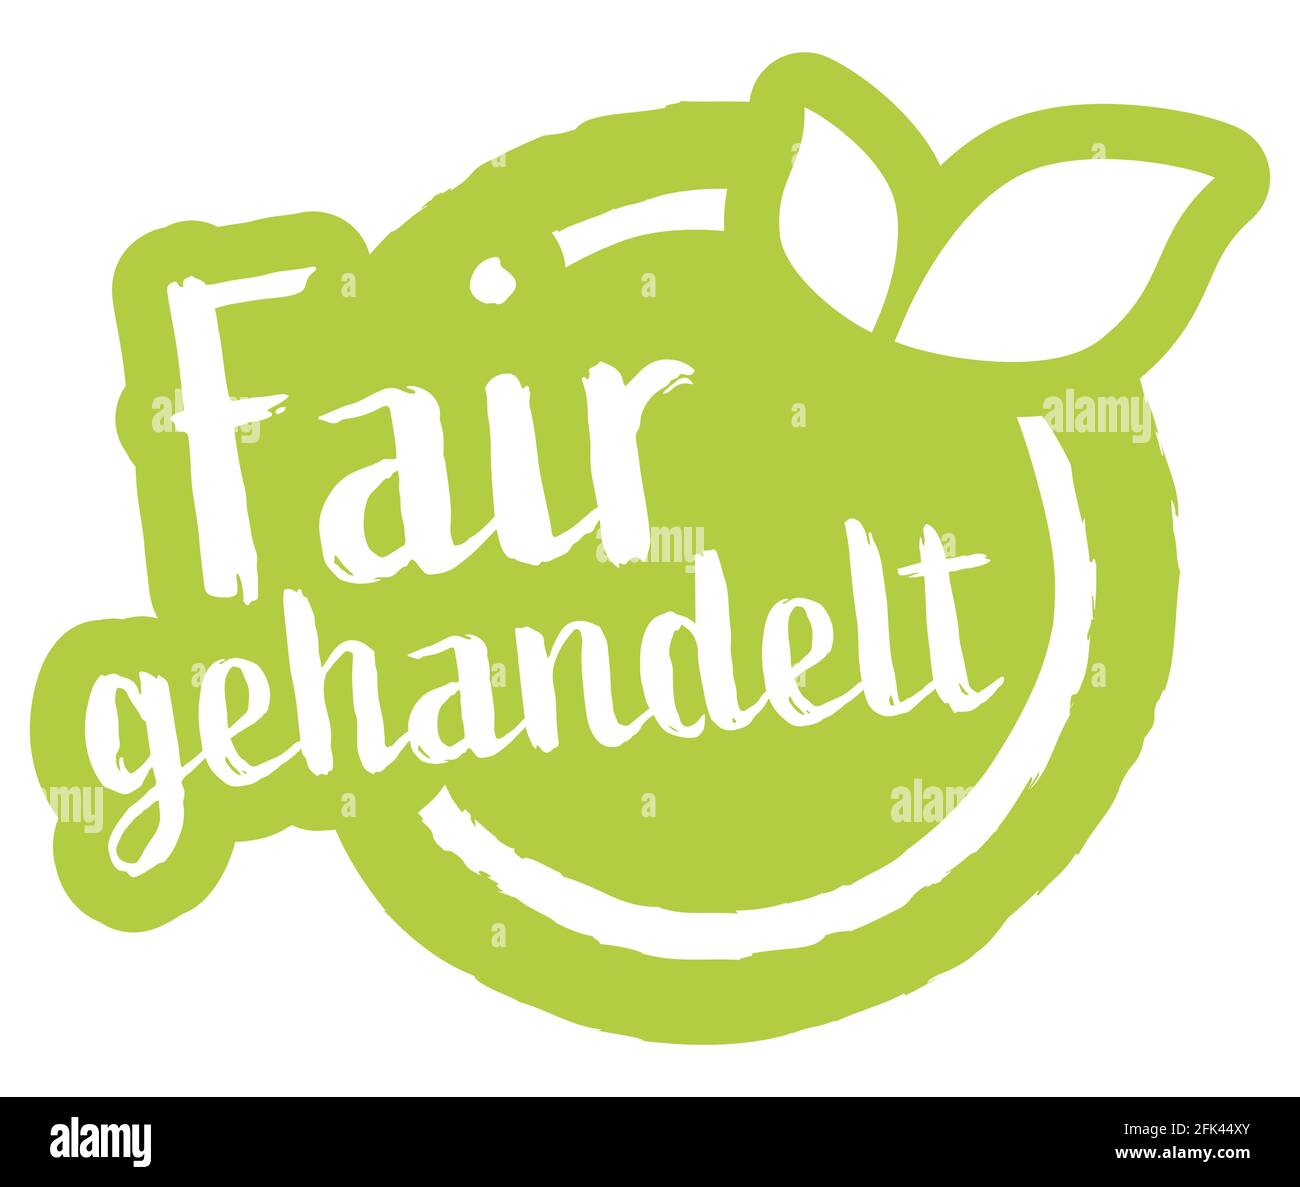 fichier vectoriel eps timbre rond moderne vert avec feuilles, texte blanc équitable (texte allemand) Illustration de Vecteur